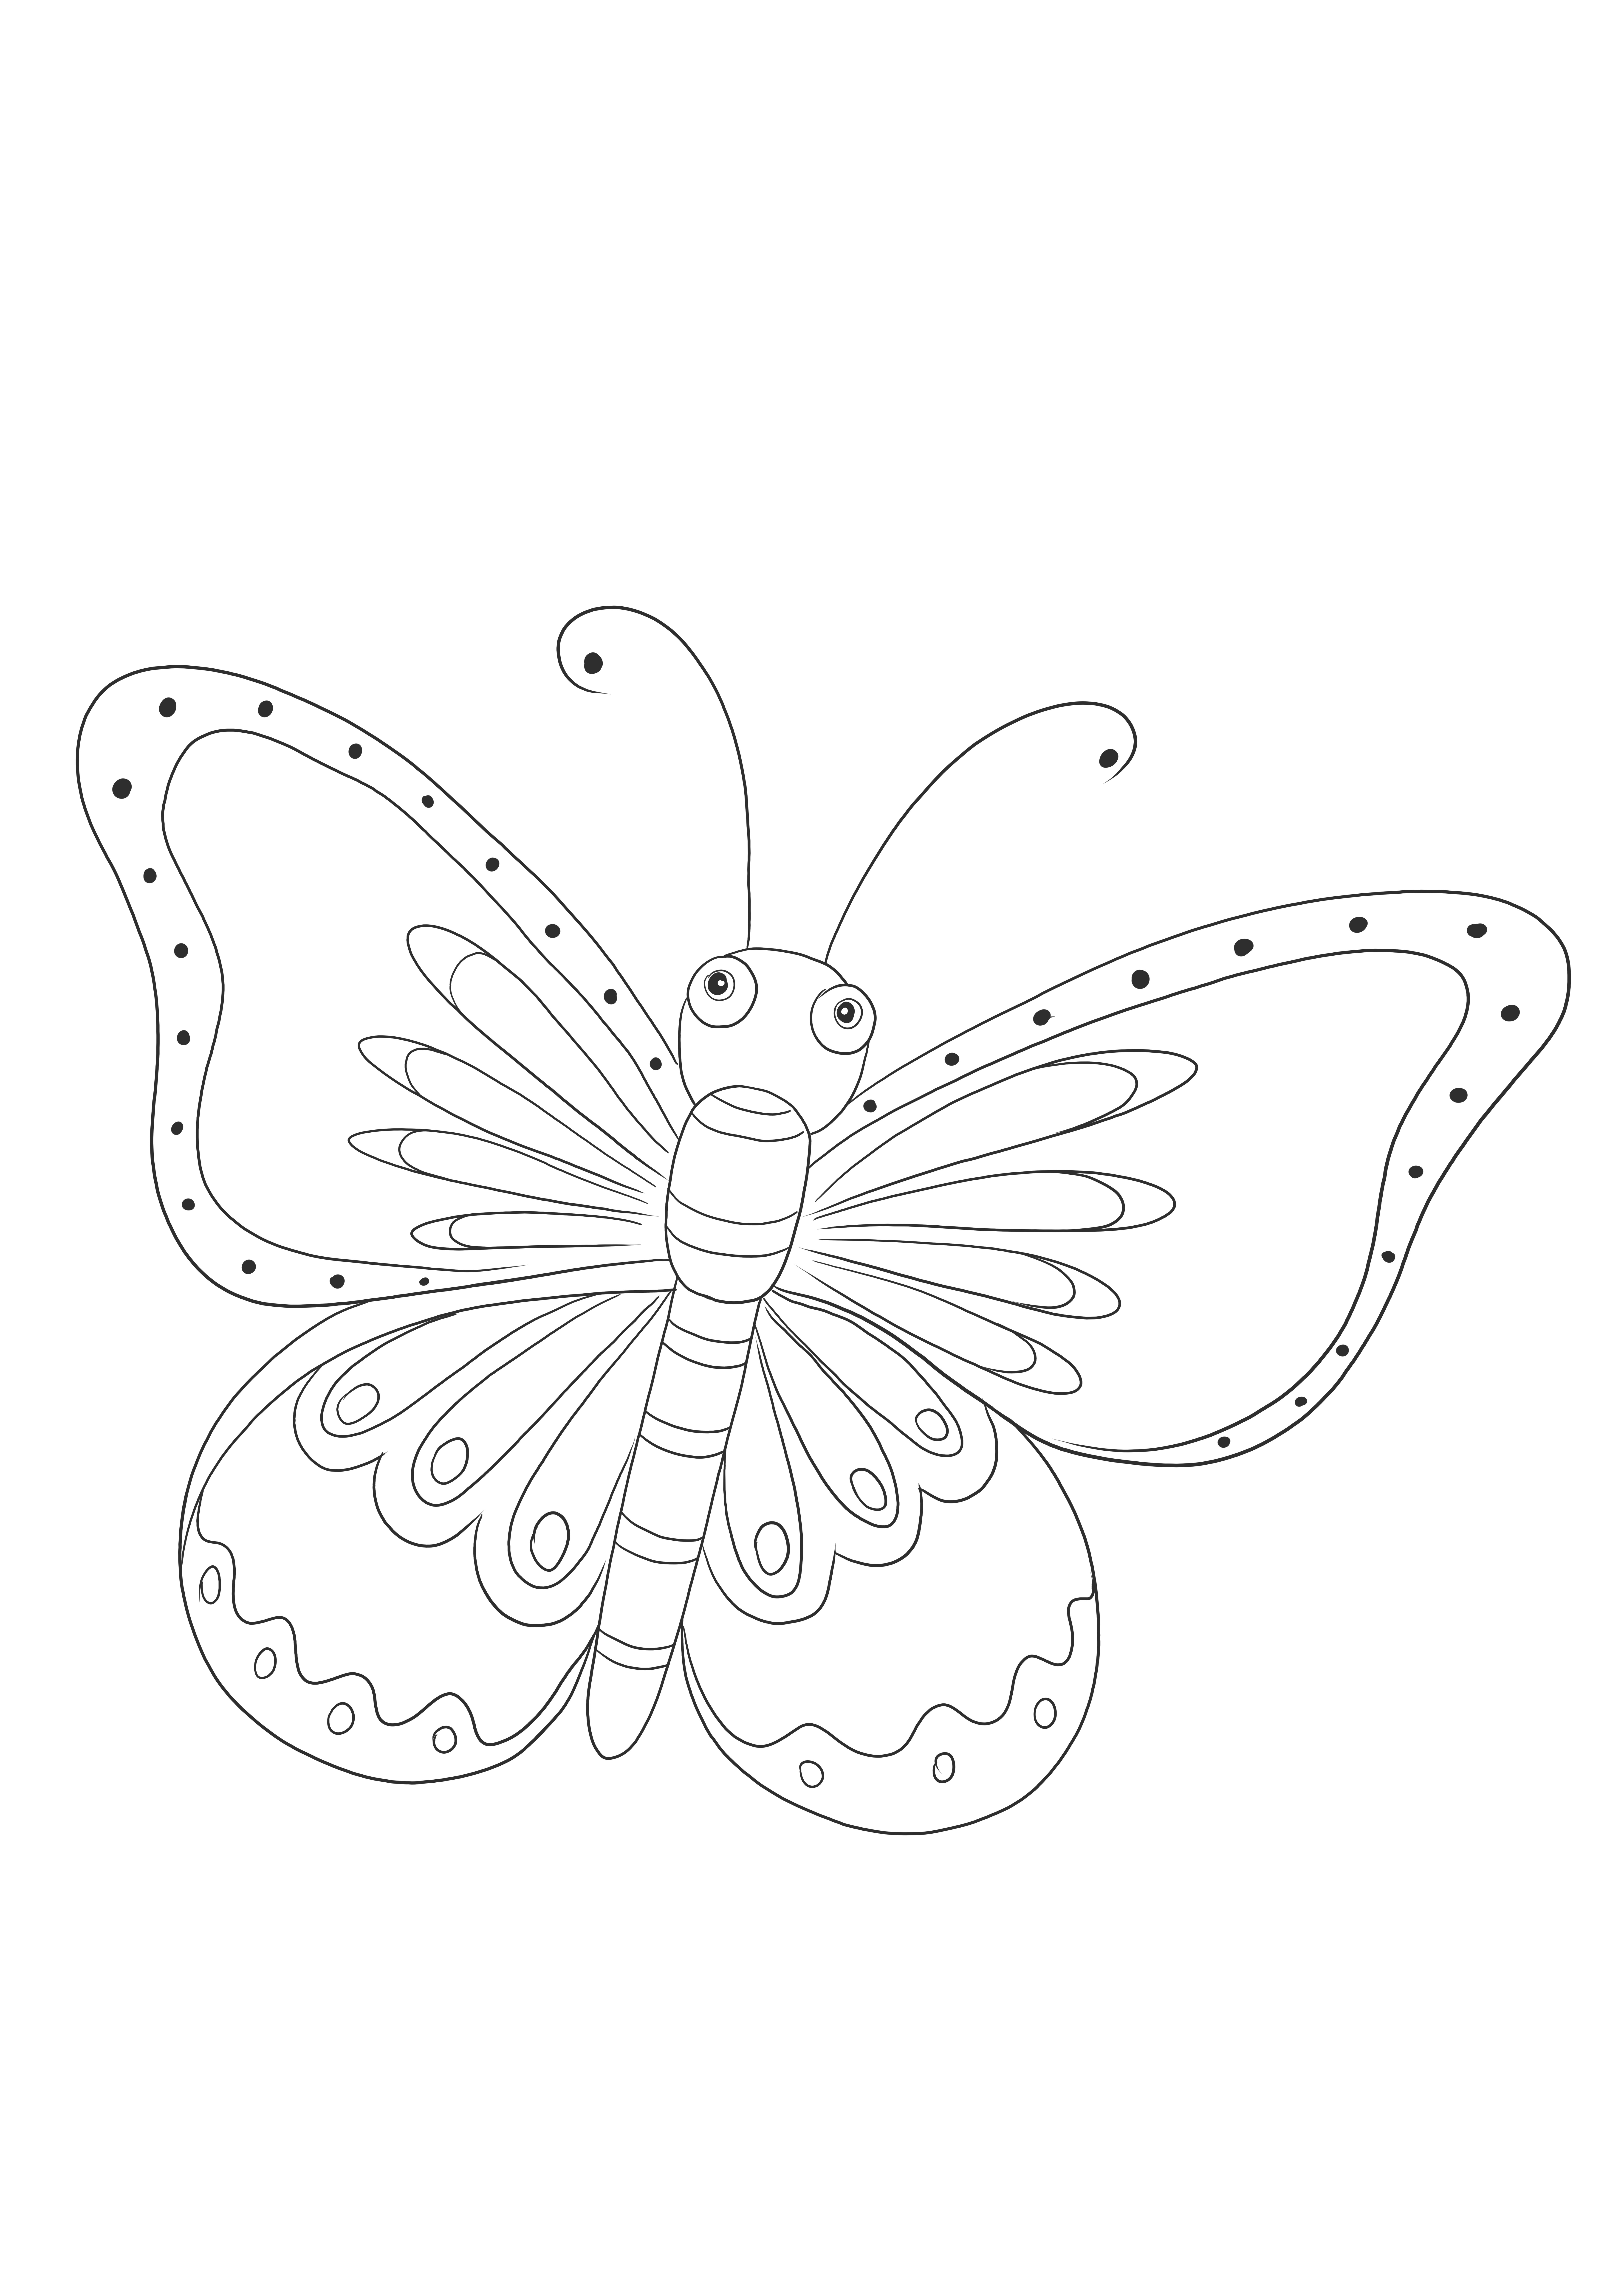 Emoji kupu-kupu mudah diwarnai dan diunduh secara gratis